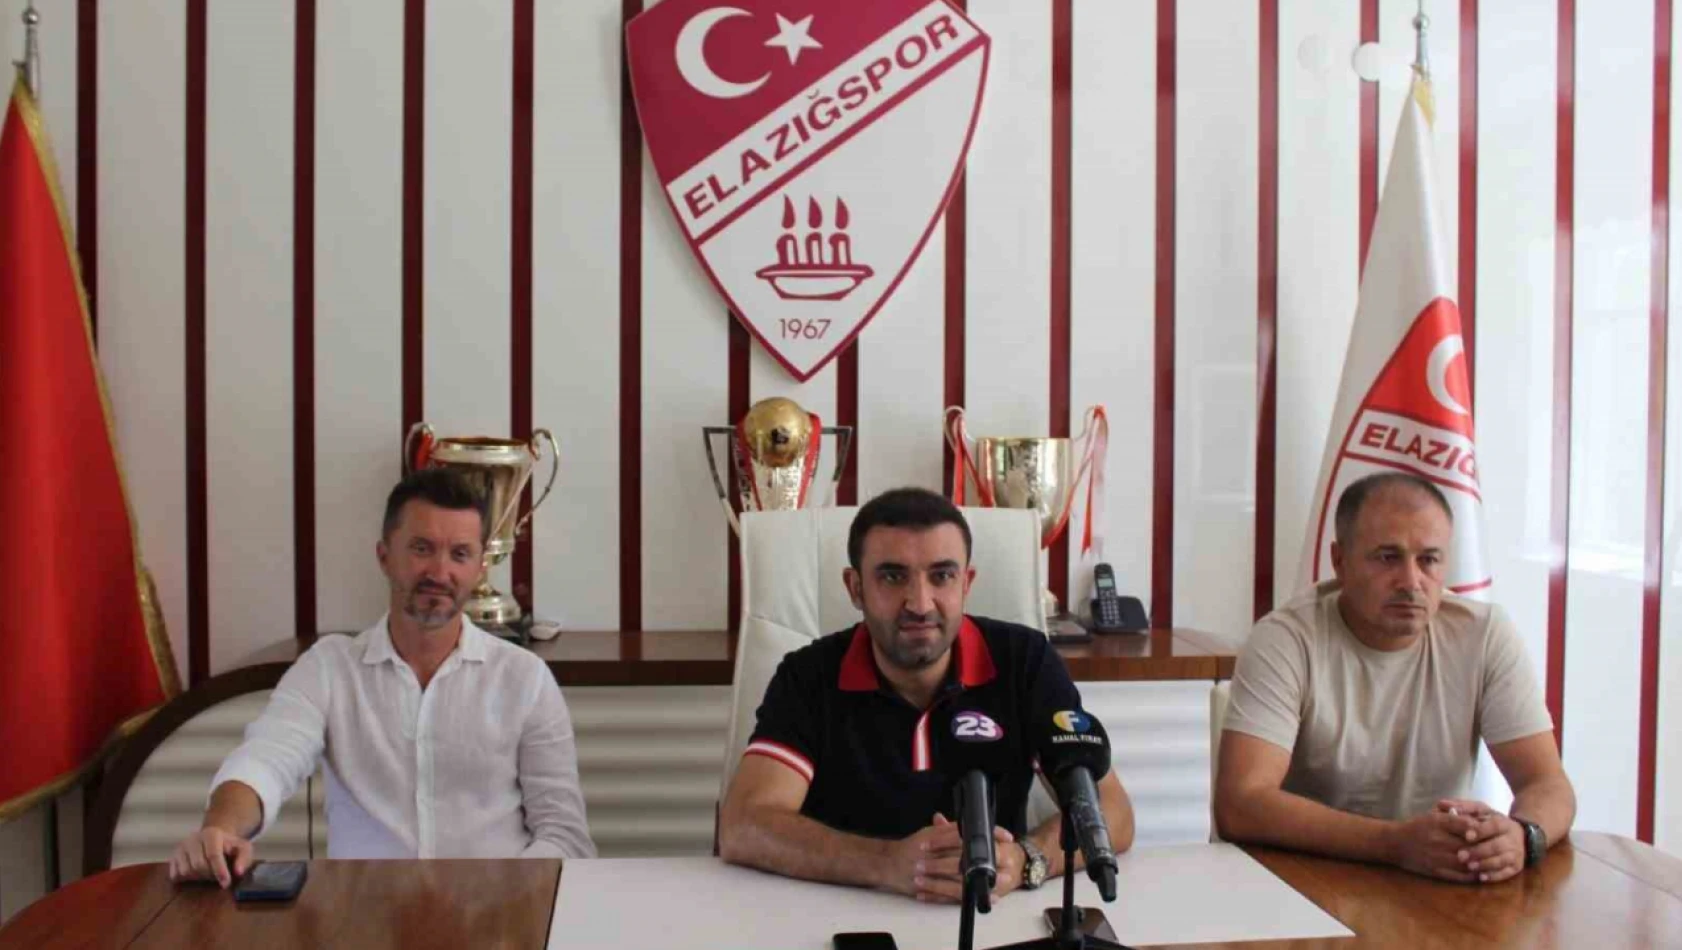 Elazığspor'da gündem transferler